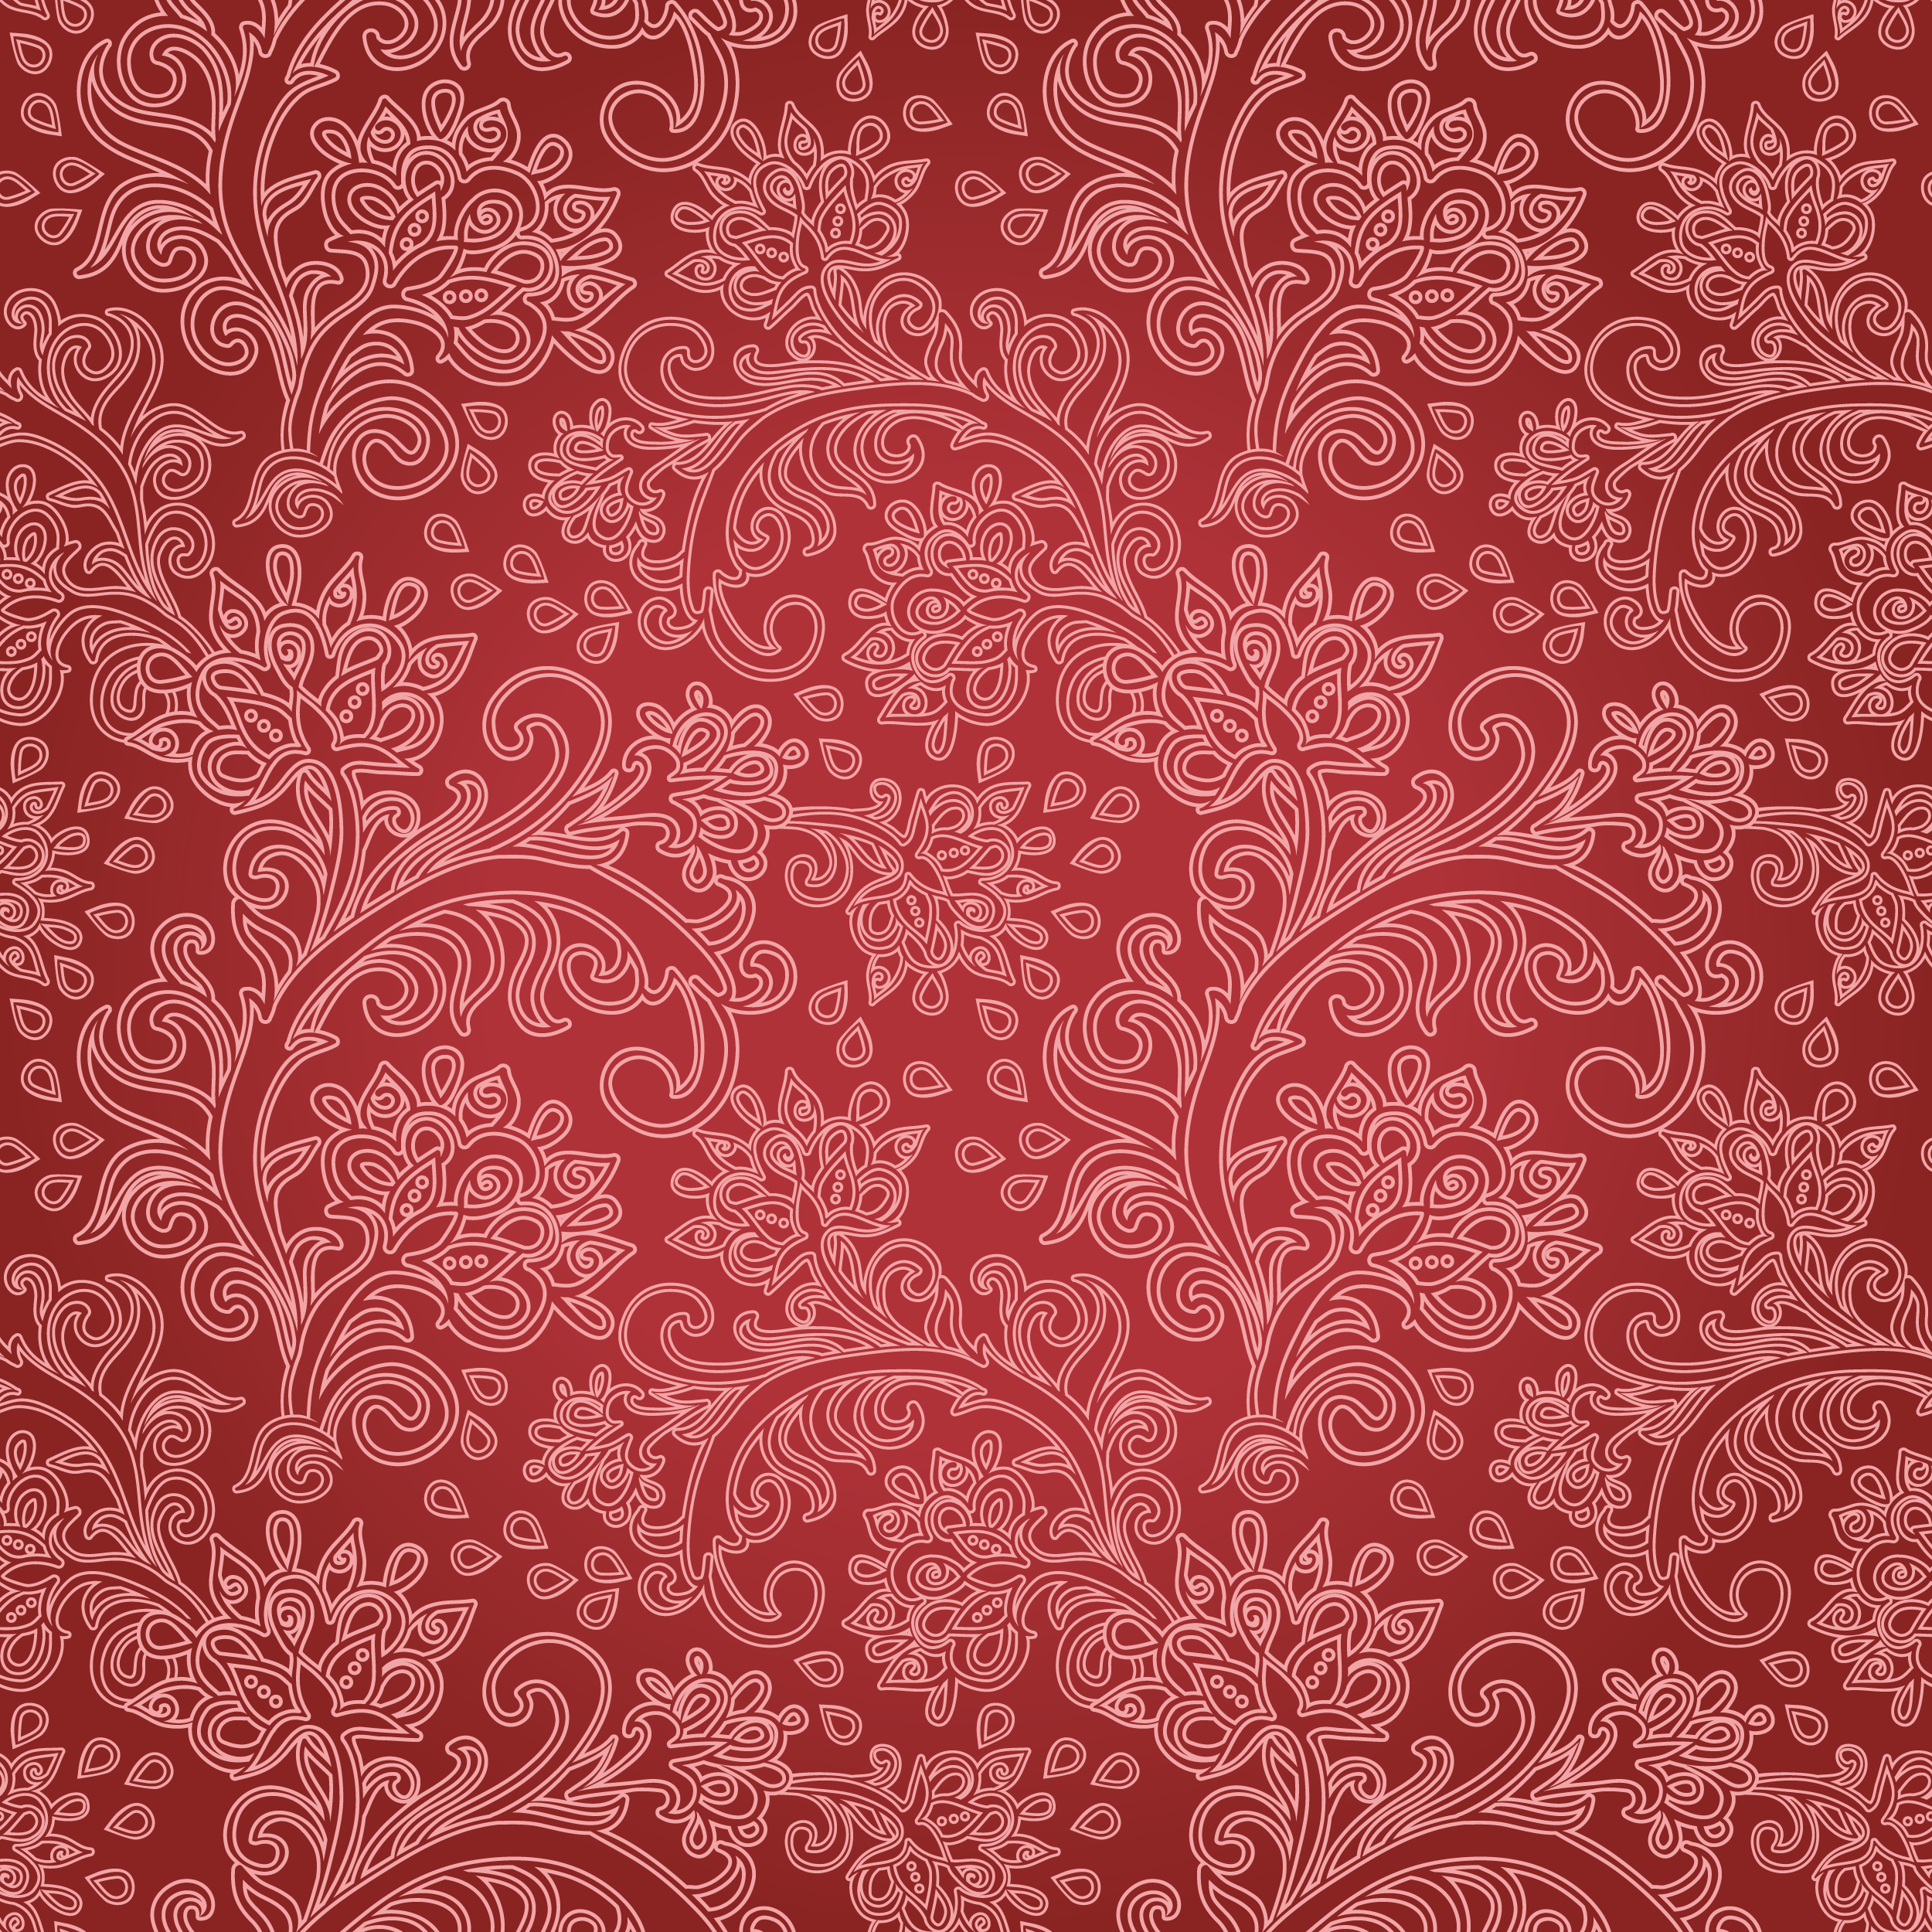 壁紙 背景イラスト 花の模様 柄 パターン No 024 茎葉 ワインレッド